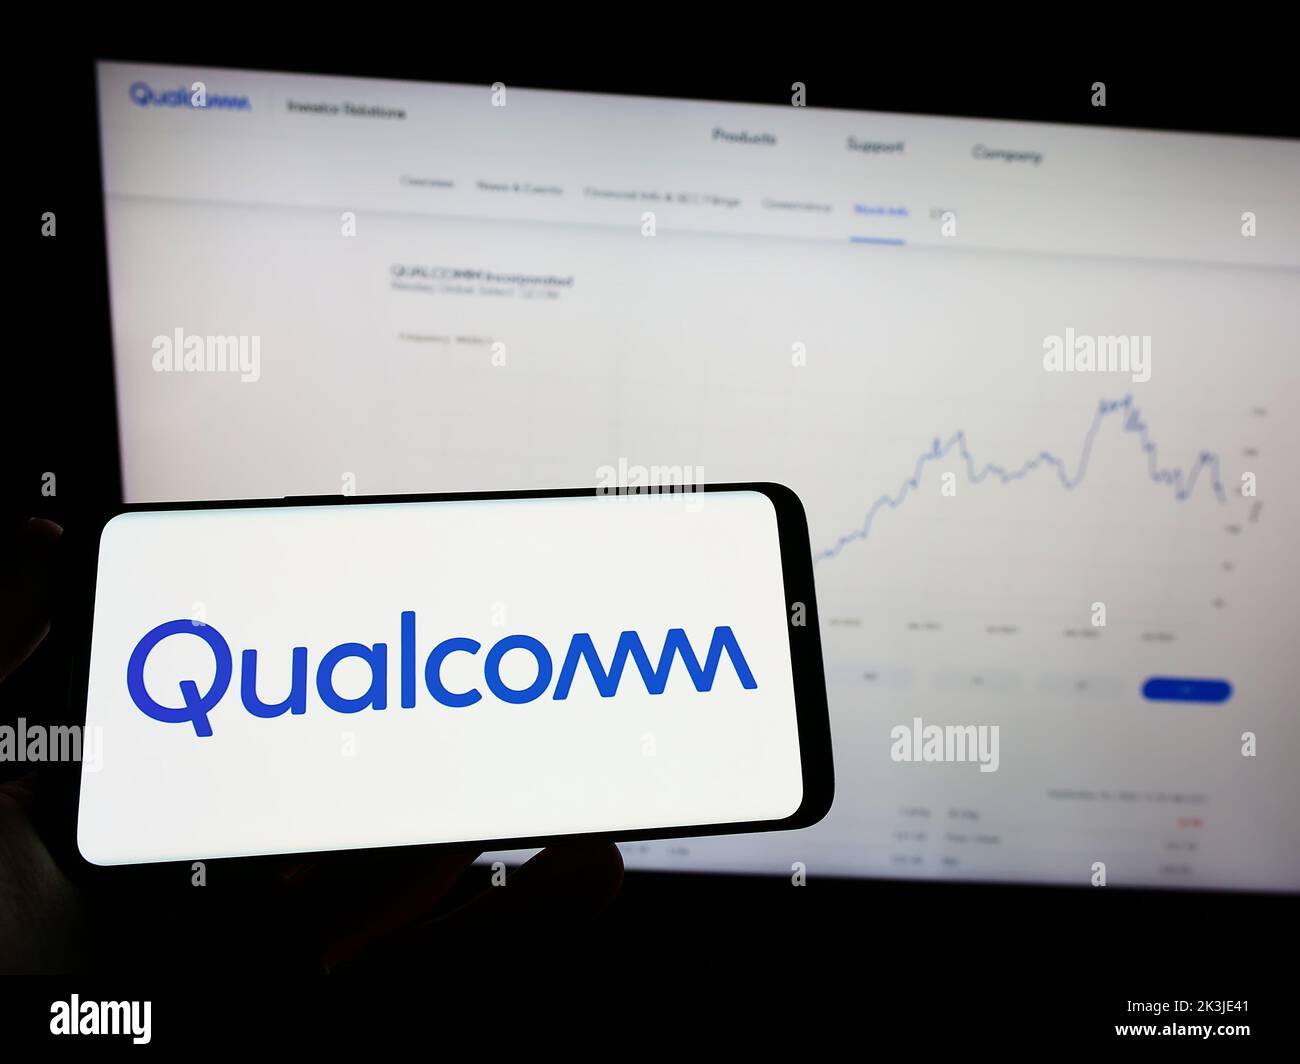 Persona in possesso di smartphone con il logo della società statunitense di semiconduttori Qualcomm Incorporated sullo schermo di fronte al sito Web. Messa a fuoco sul display del telefono. Foto Stock